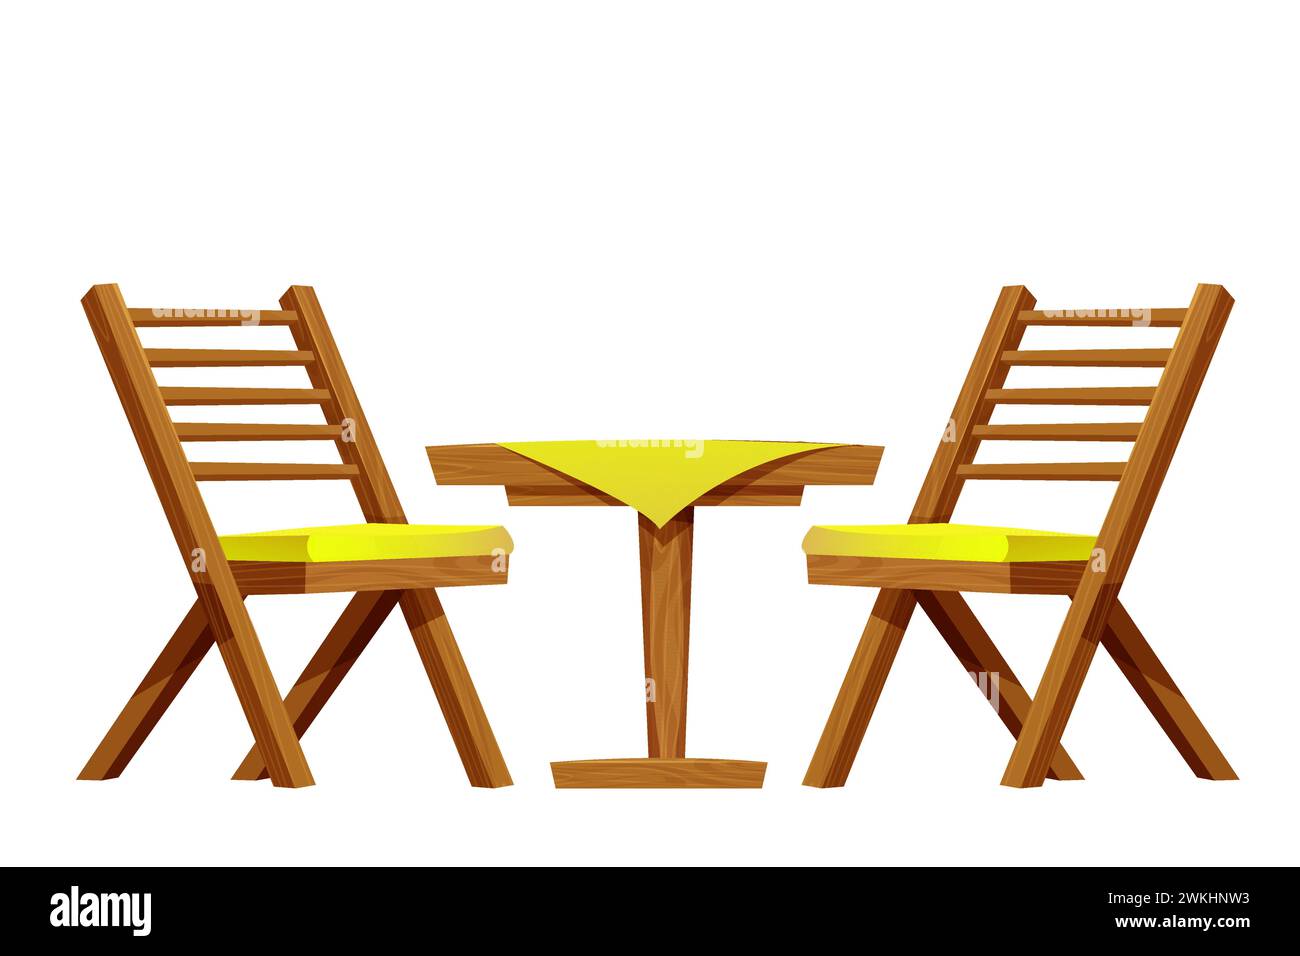 Table de pique-nique avec chaise set meubles en bois, bureau en bois avec pied et nappe, construction rustique isolé sur fond blanc. Table basse texturée en bois comique. Illustration vectorielle Illustration de Vecteur